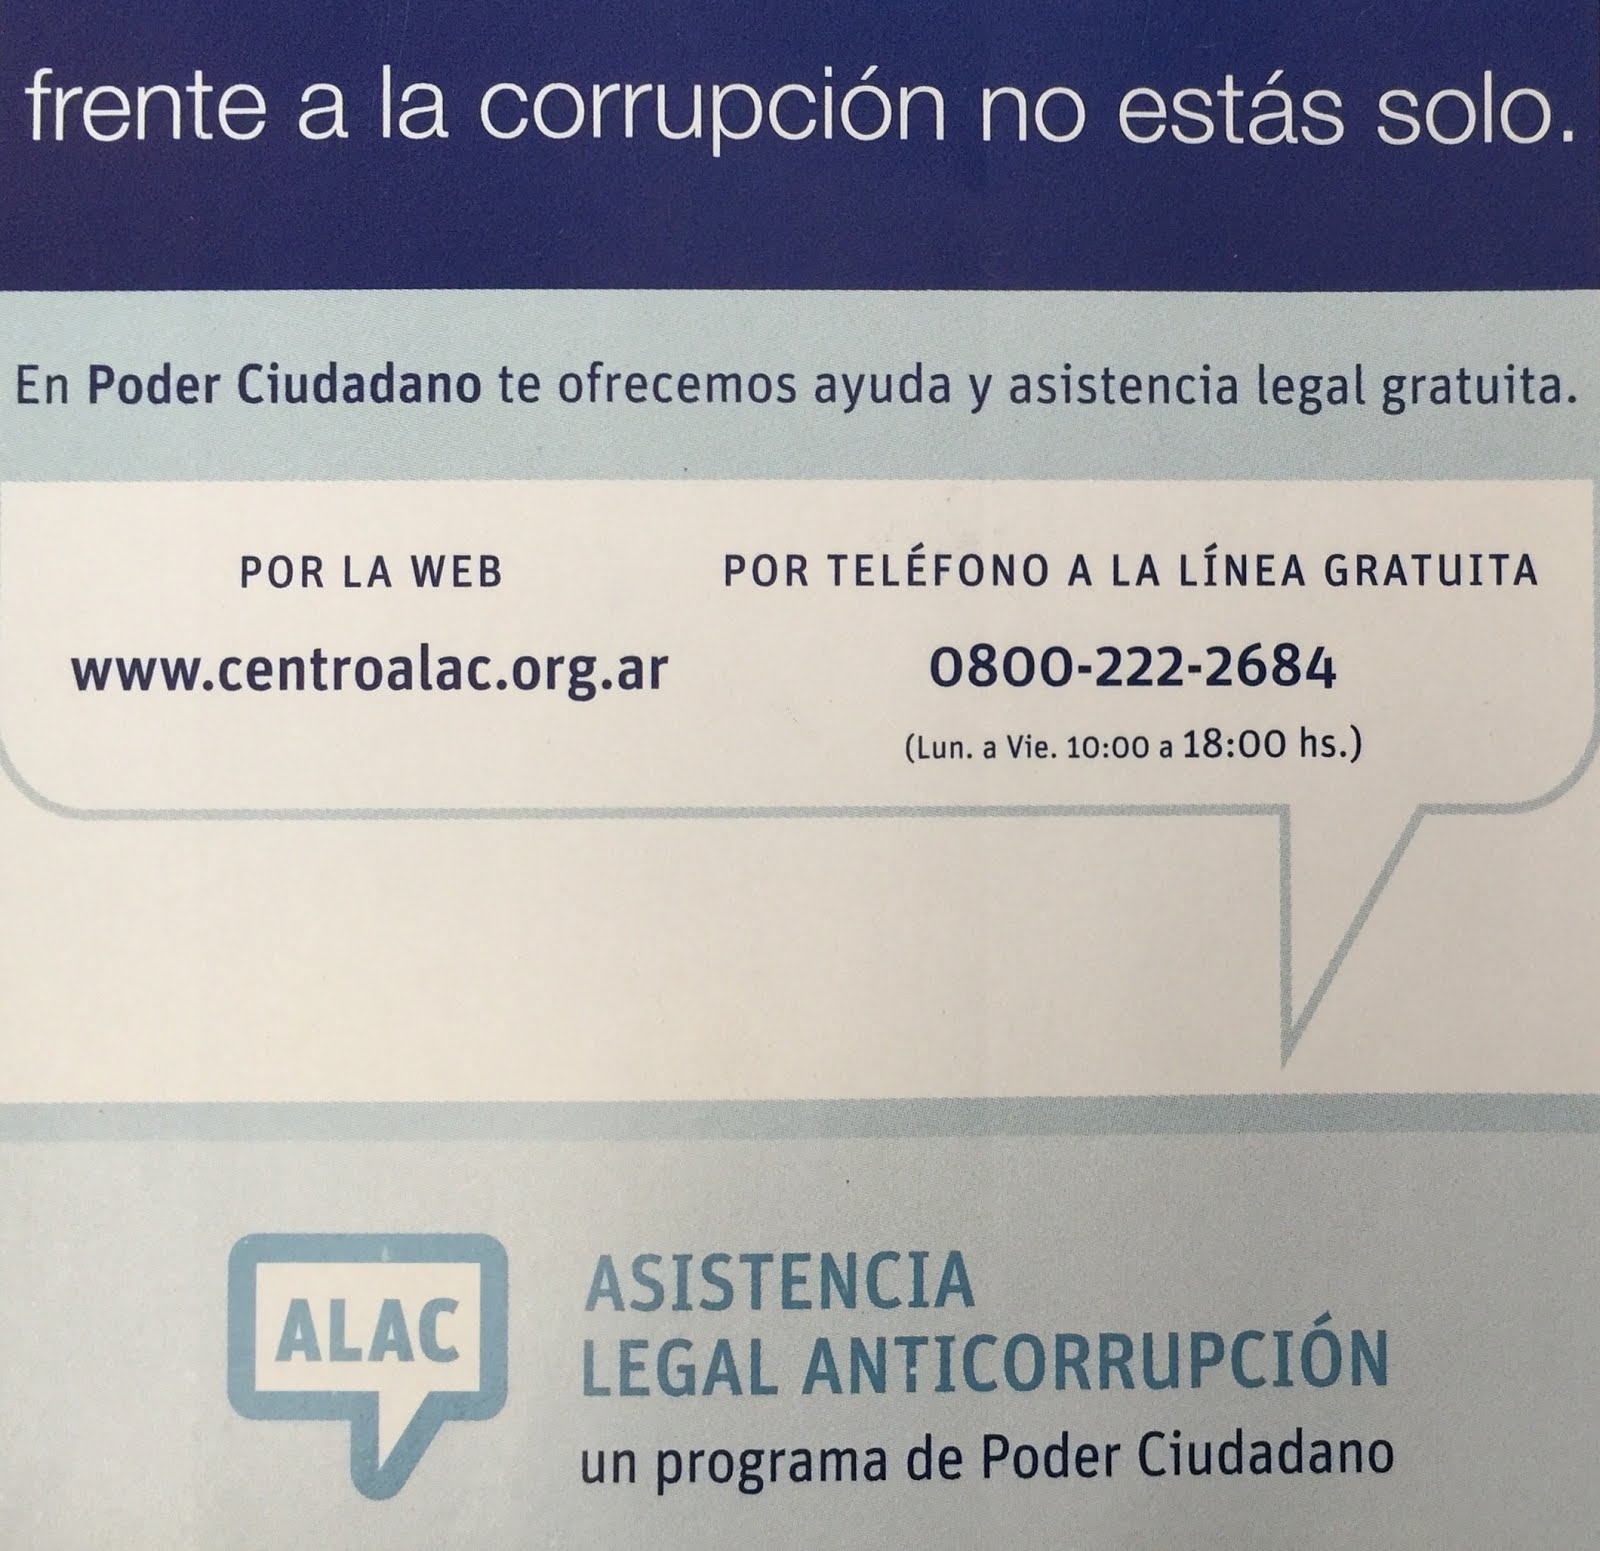 Asistencia Legal Anticorrupción